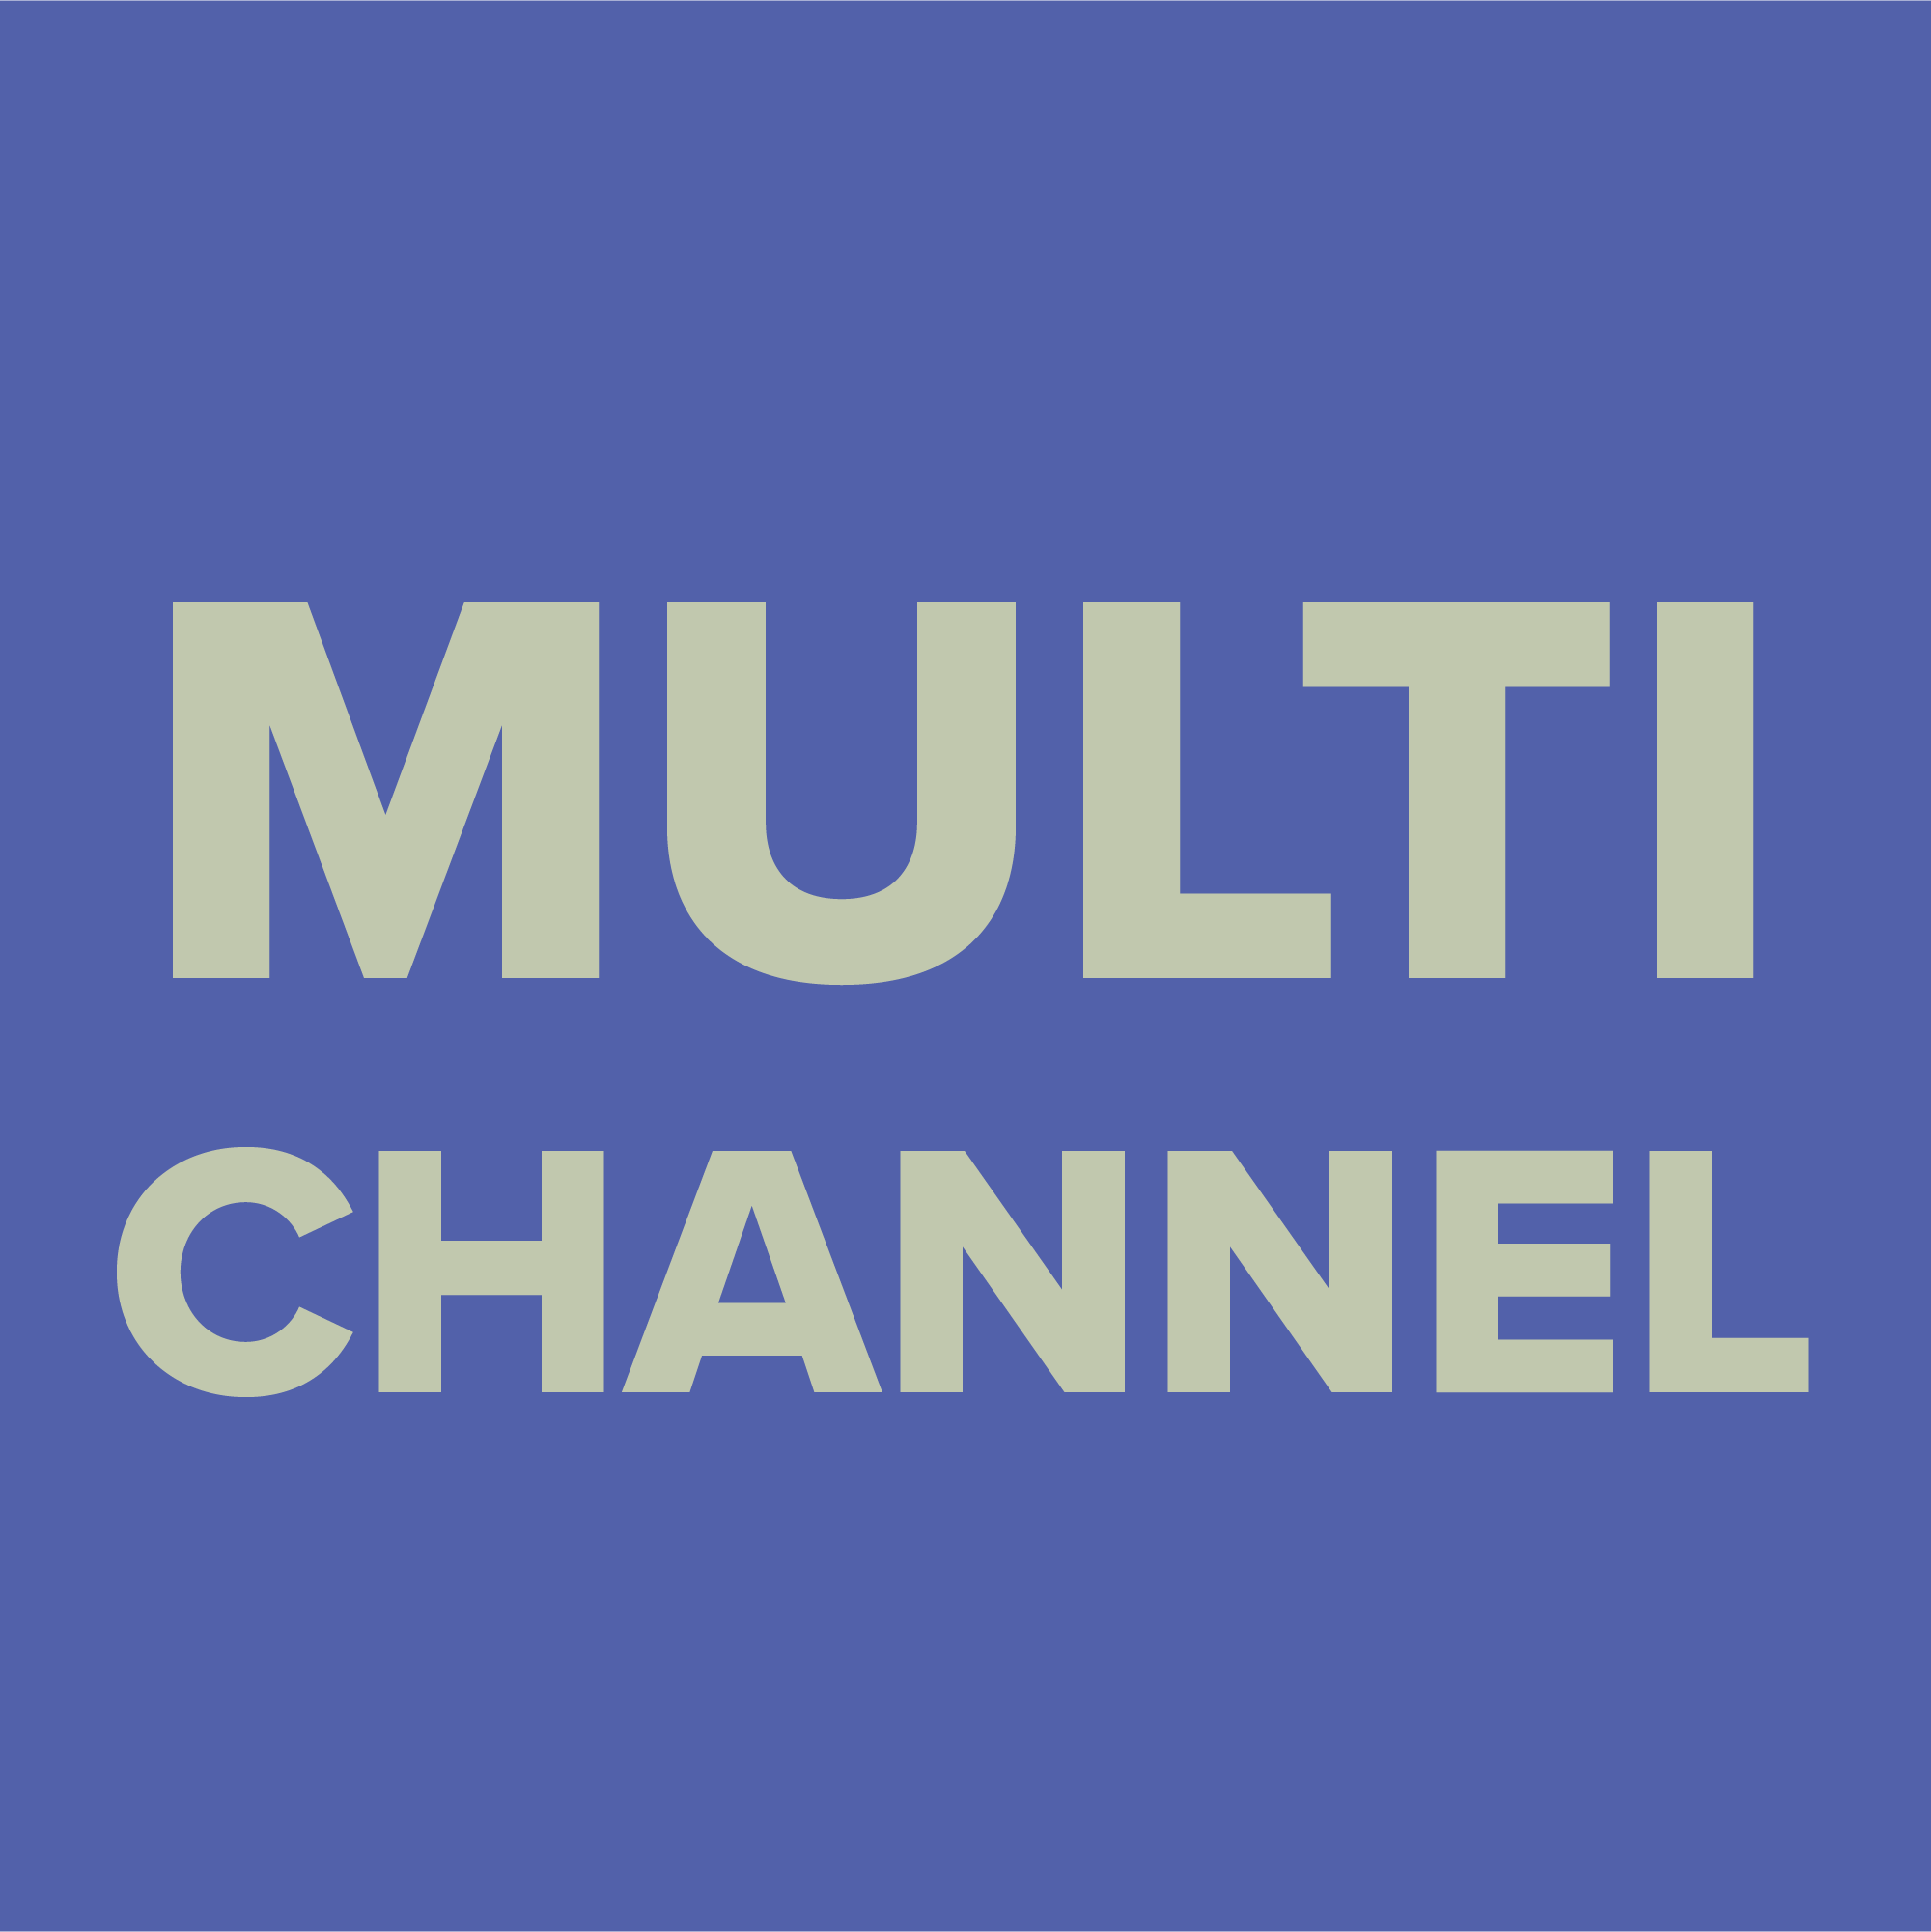 Dieses Bild enthält den Text "Multi Channel".